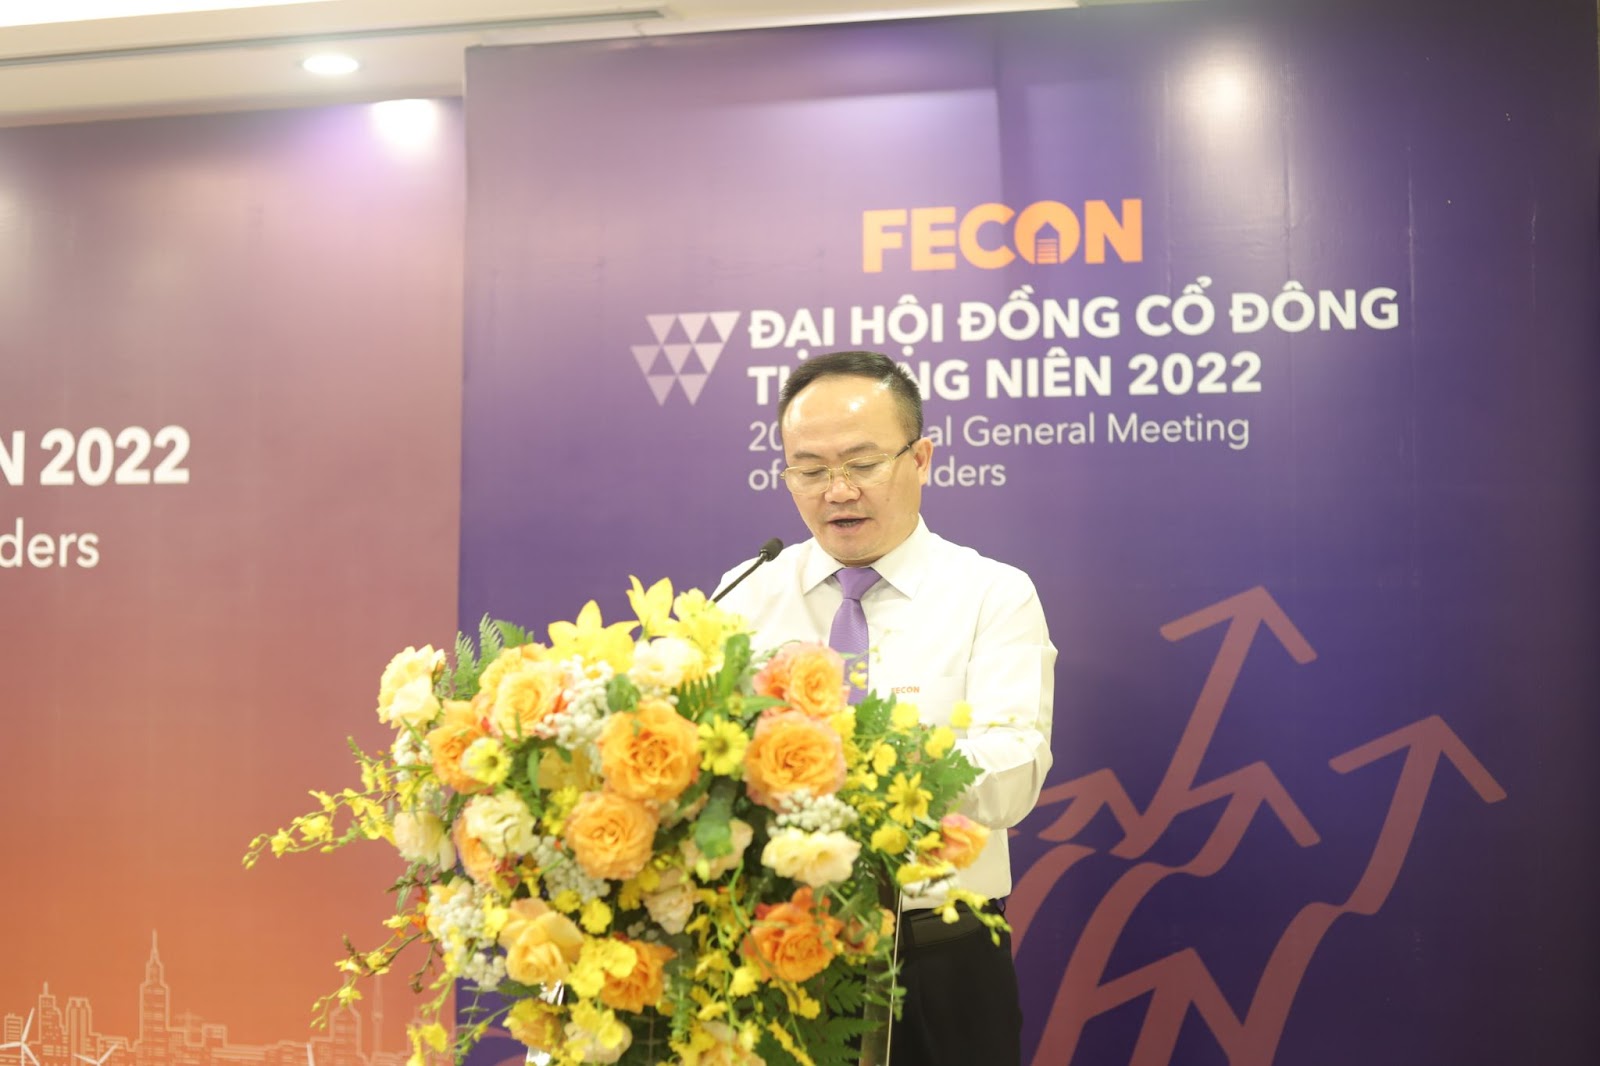 ĐHCĐ Fecon: Tái cơ cấu cấu công ty, Fecoc dự kiến phục hồi đà tăng trưởng với doanh thu 5000 tỷ trong 2022 với các dự án BĐS mới - Ảnh 2.